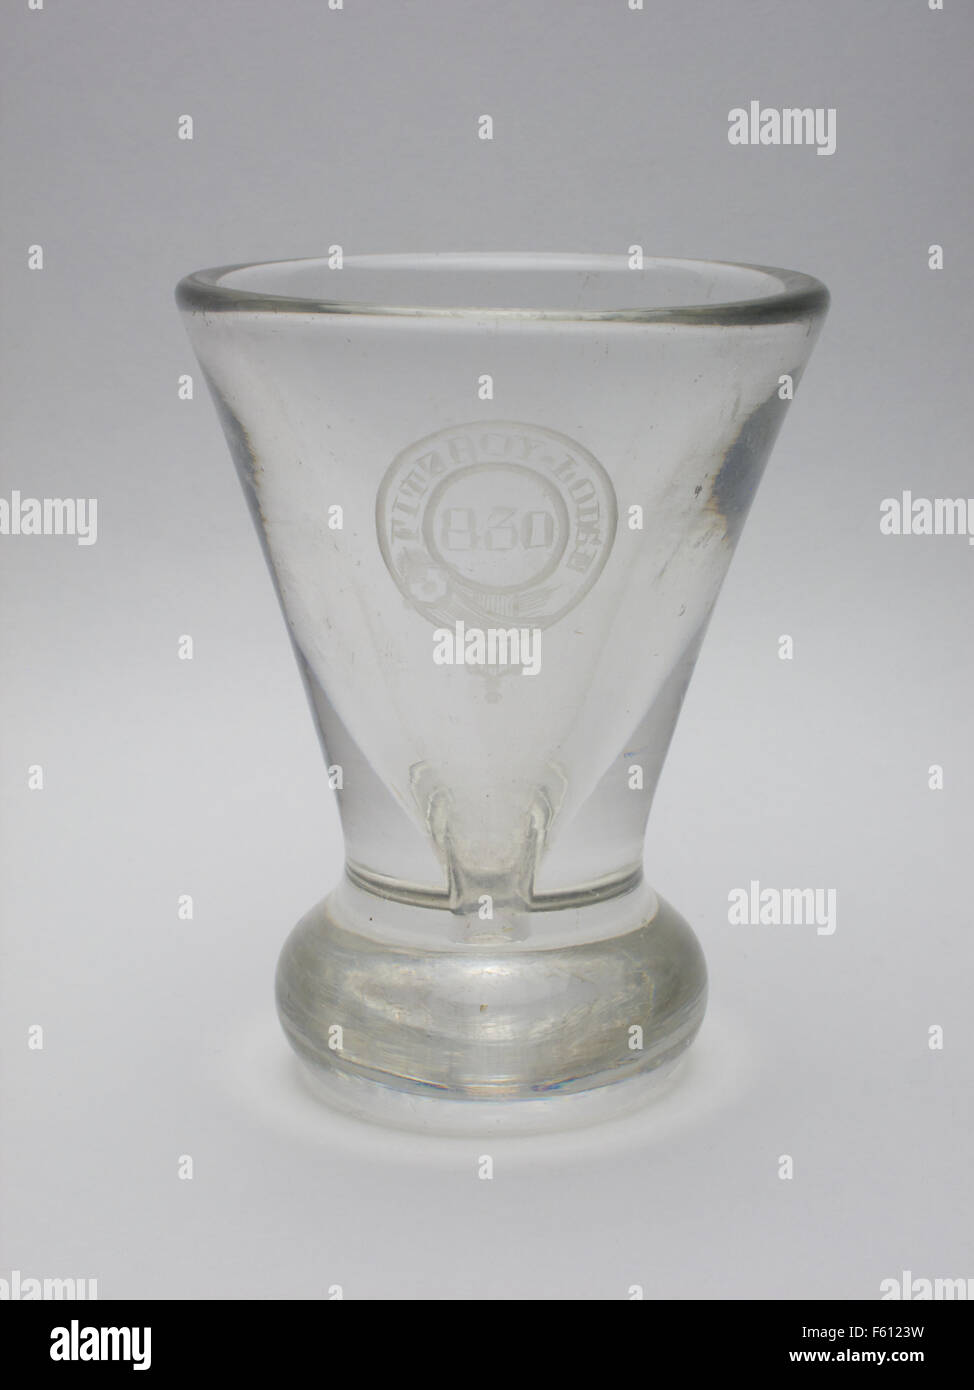 Antique Masonic toasting glass Stock Photo - Alamy